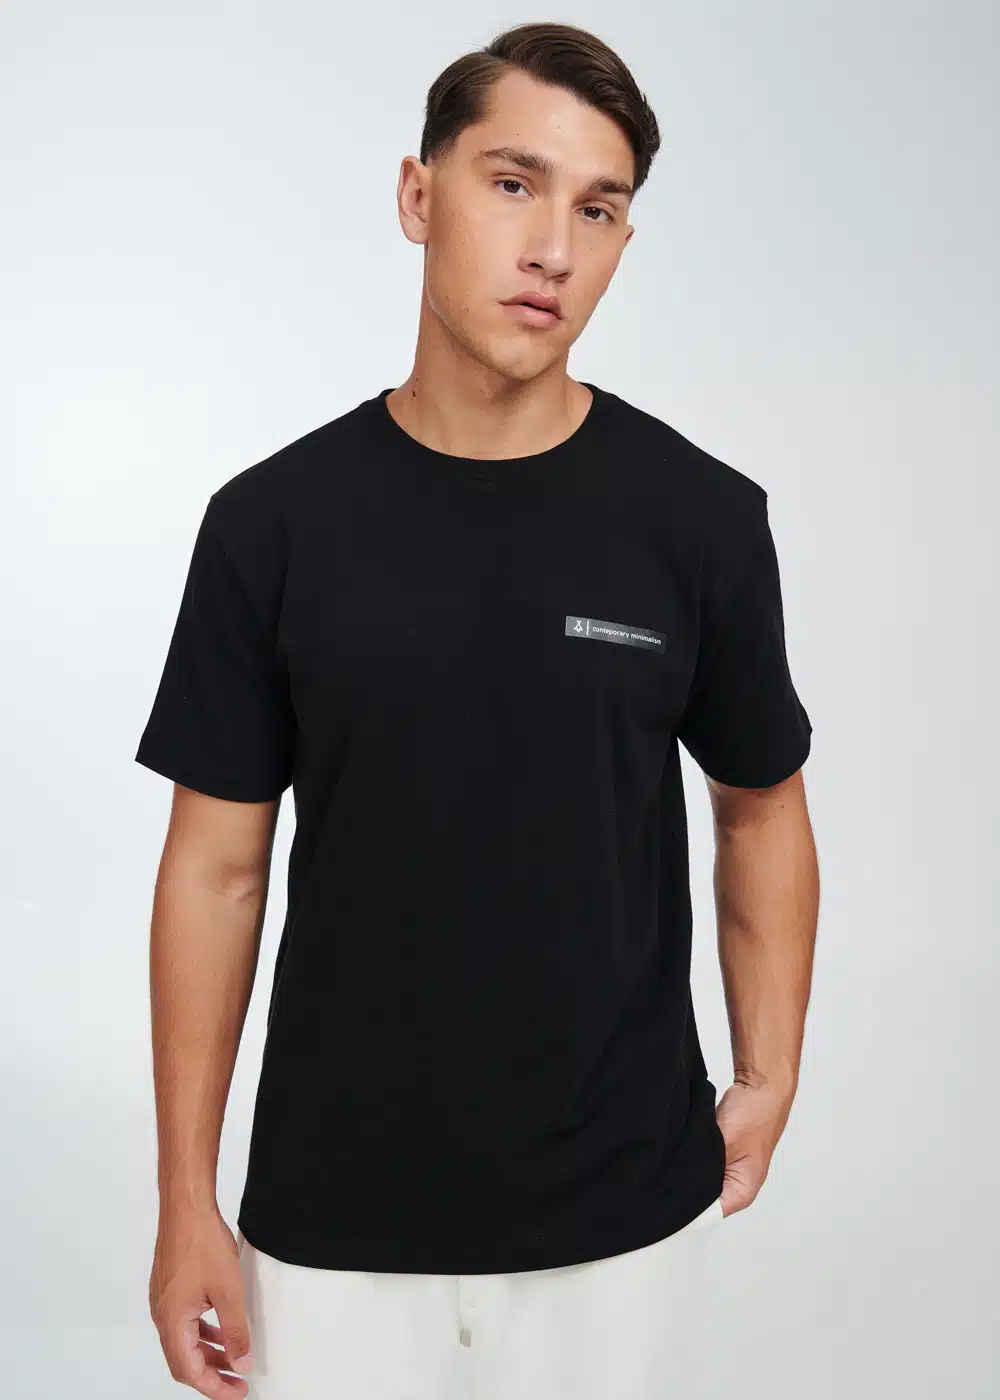 P/COC Ανδρικό T-Shirt με Στρογγυλή Λαιμόκοψη και Τύπωμα στο Αριστερό Μπροστινό Μέρος Μαύρο - P-1712 - BLACK